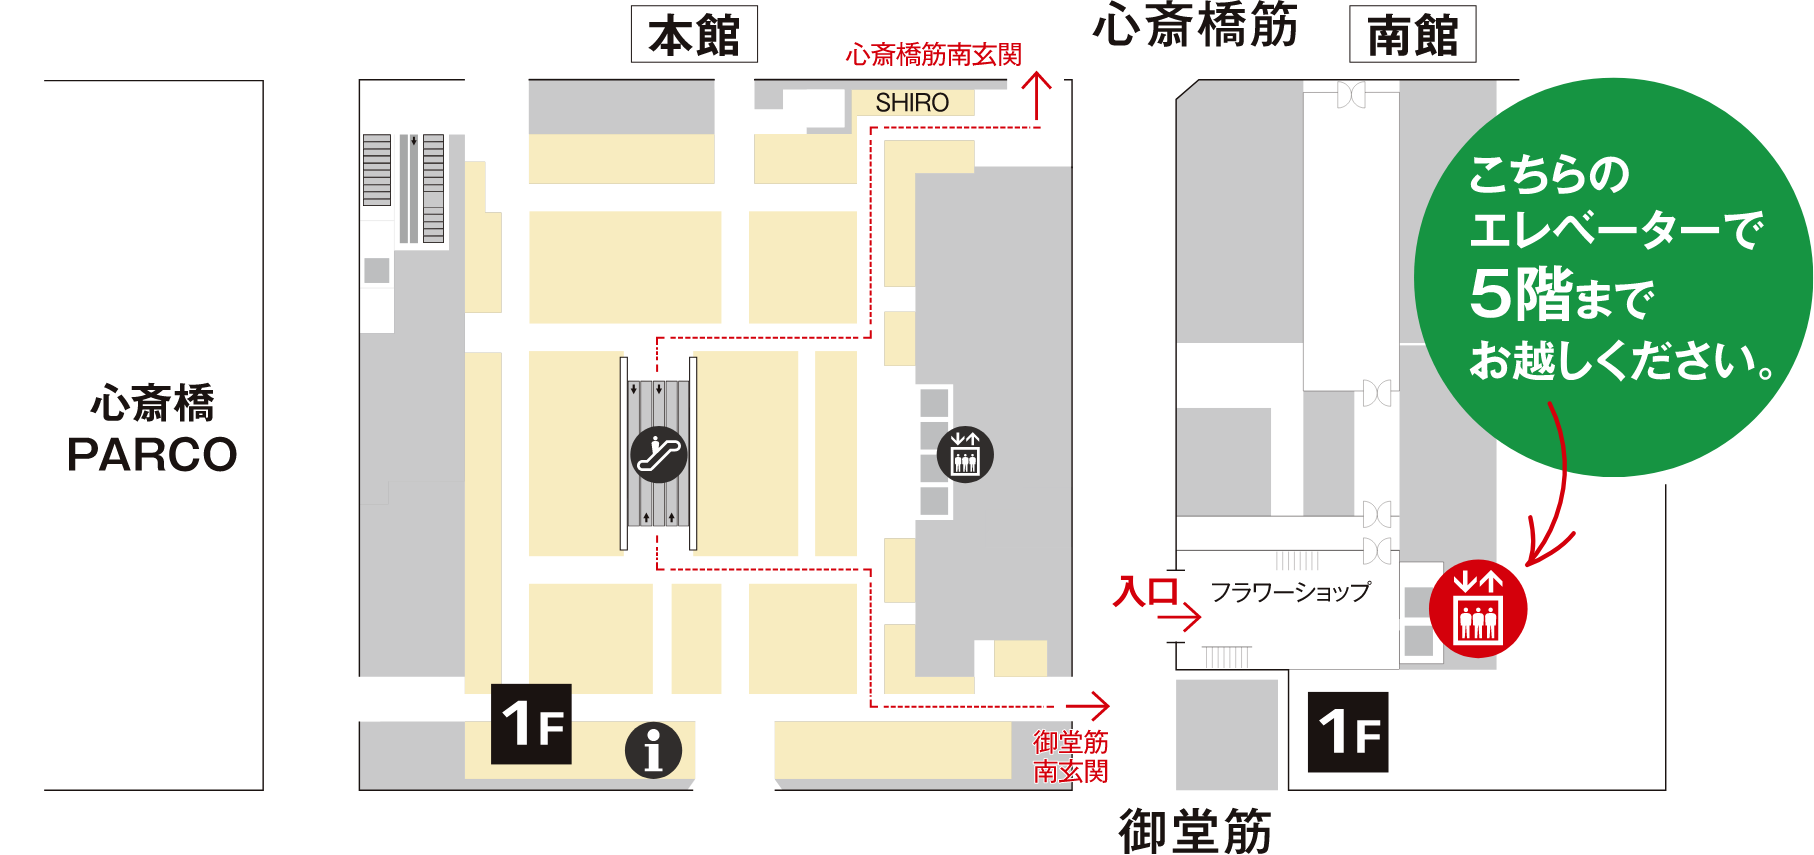 大丸心斋桥店MAP